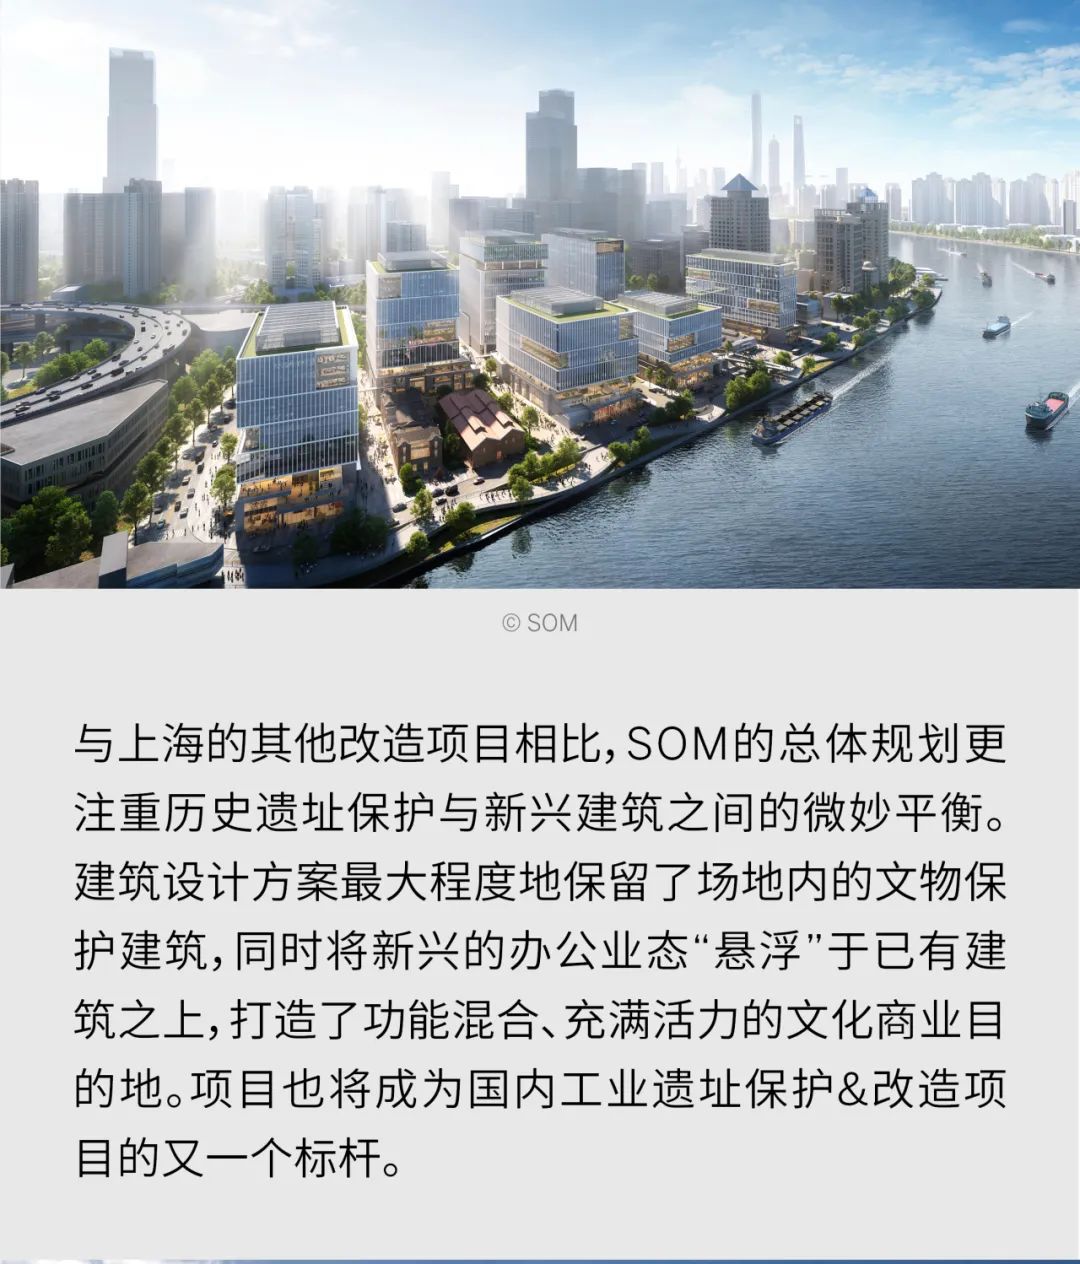 SOM助力上海城市更新 